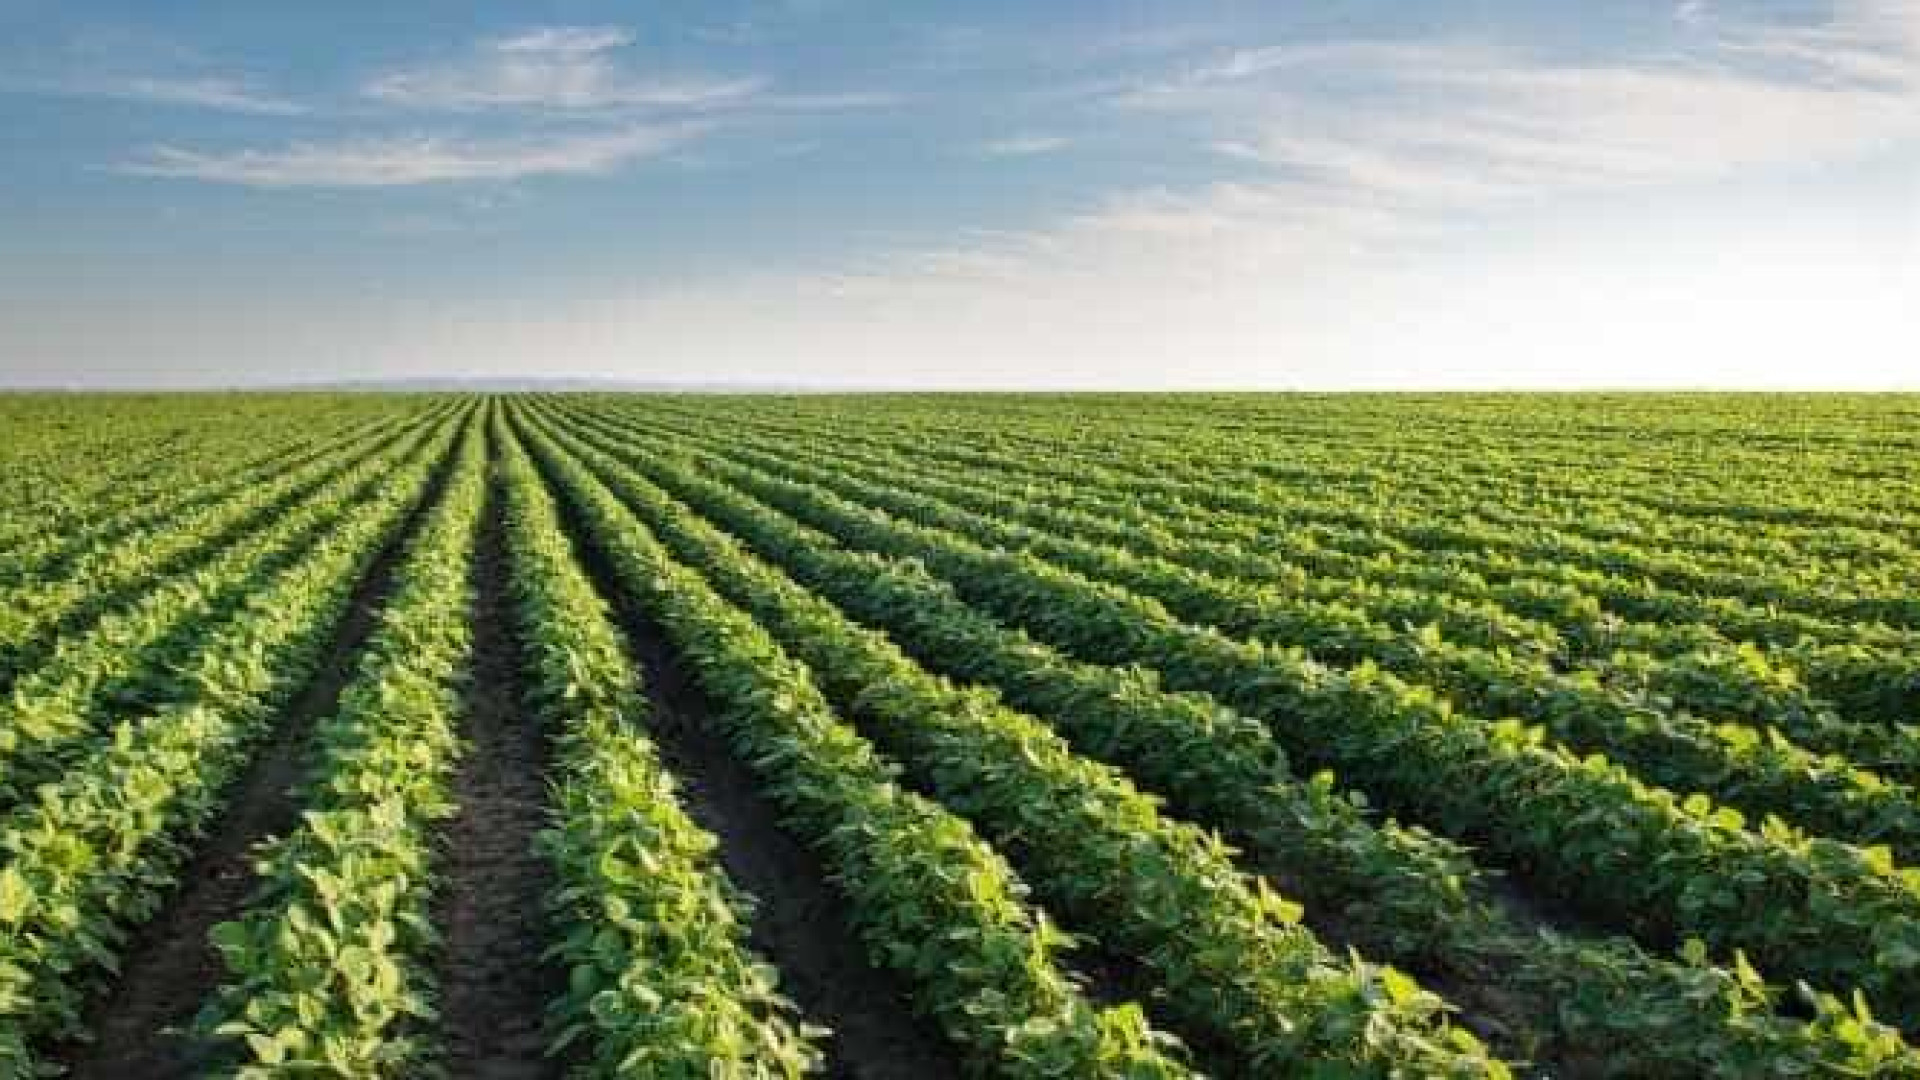 Revolução agrícola no Brasil foi realizada usando 8% das terras, diz Bolsonaro